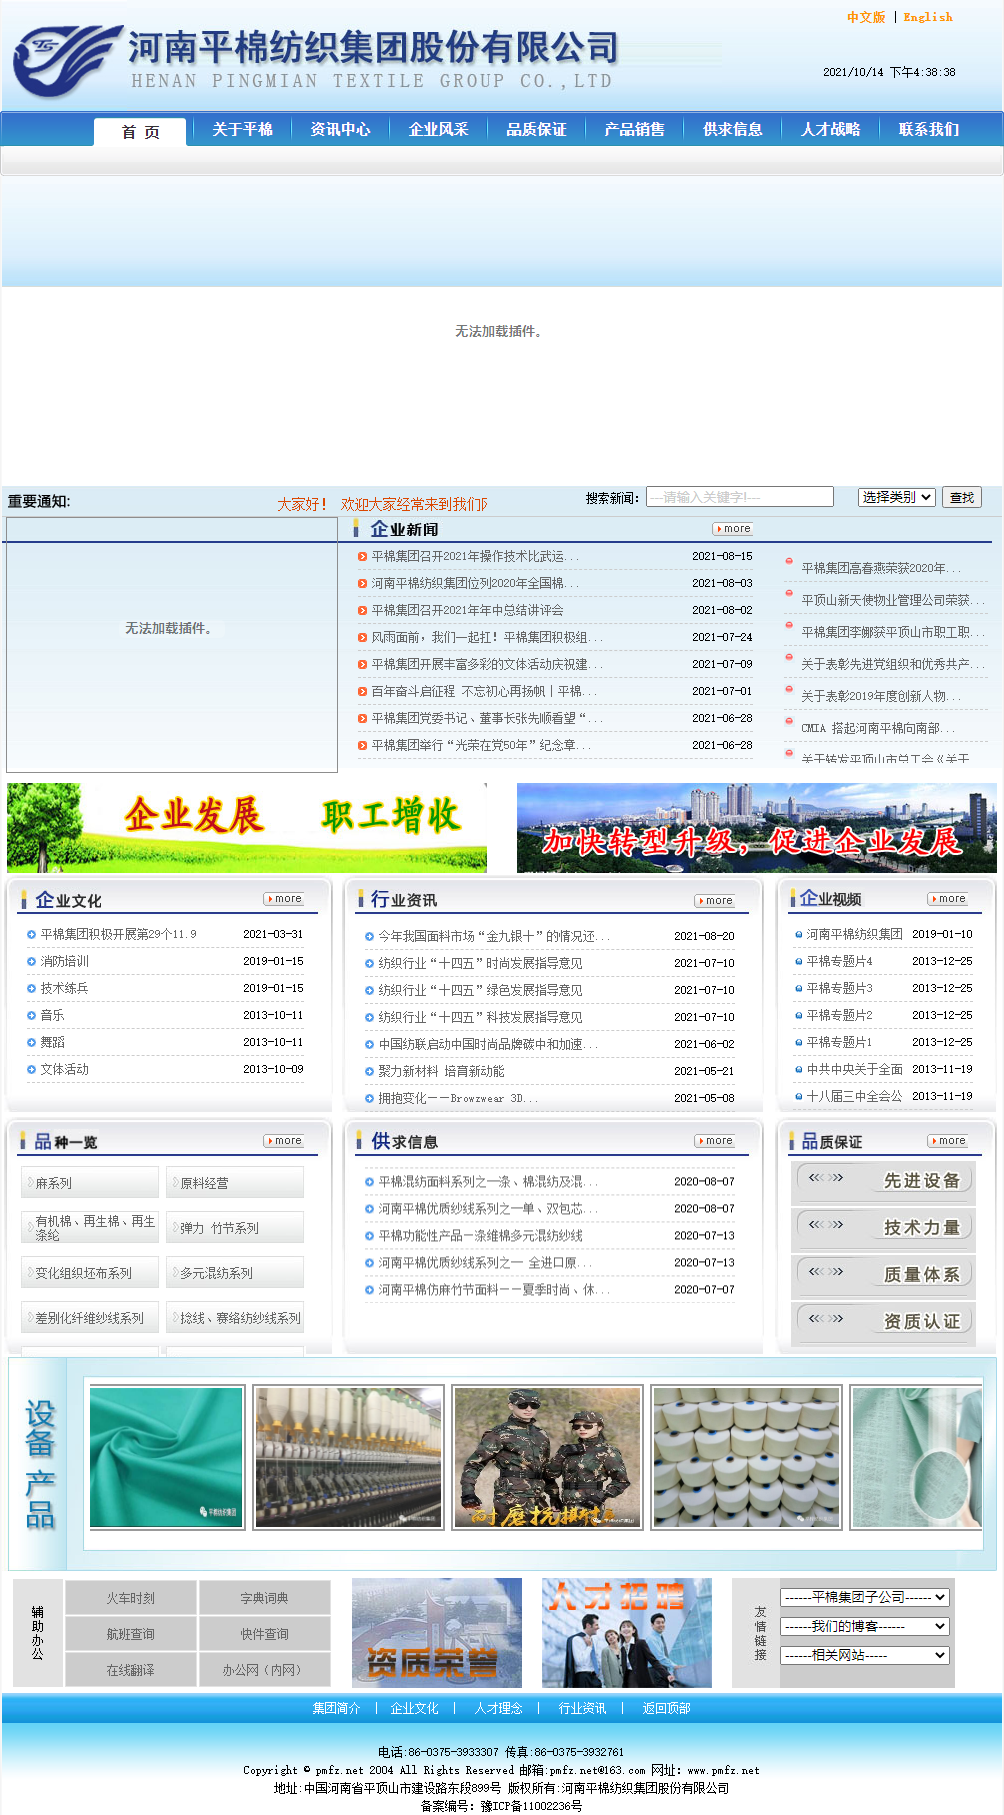 河南平棉纺织集团股份有限公司网站案例